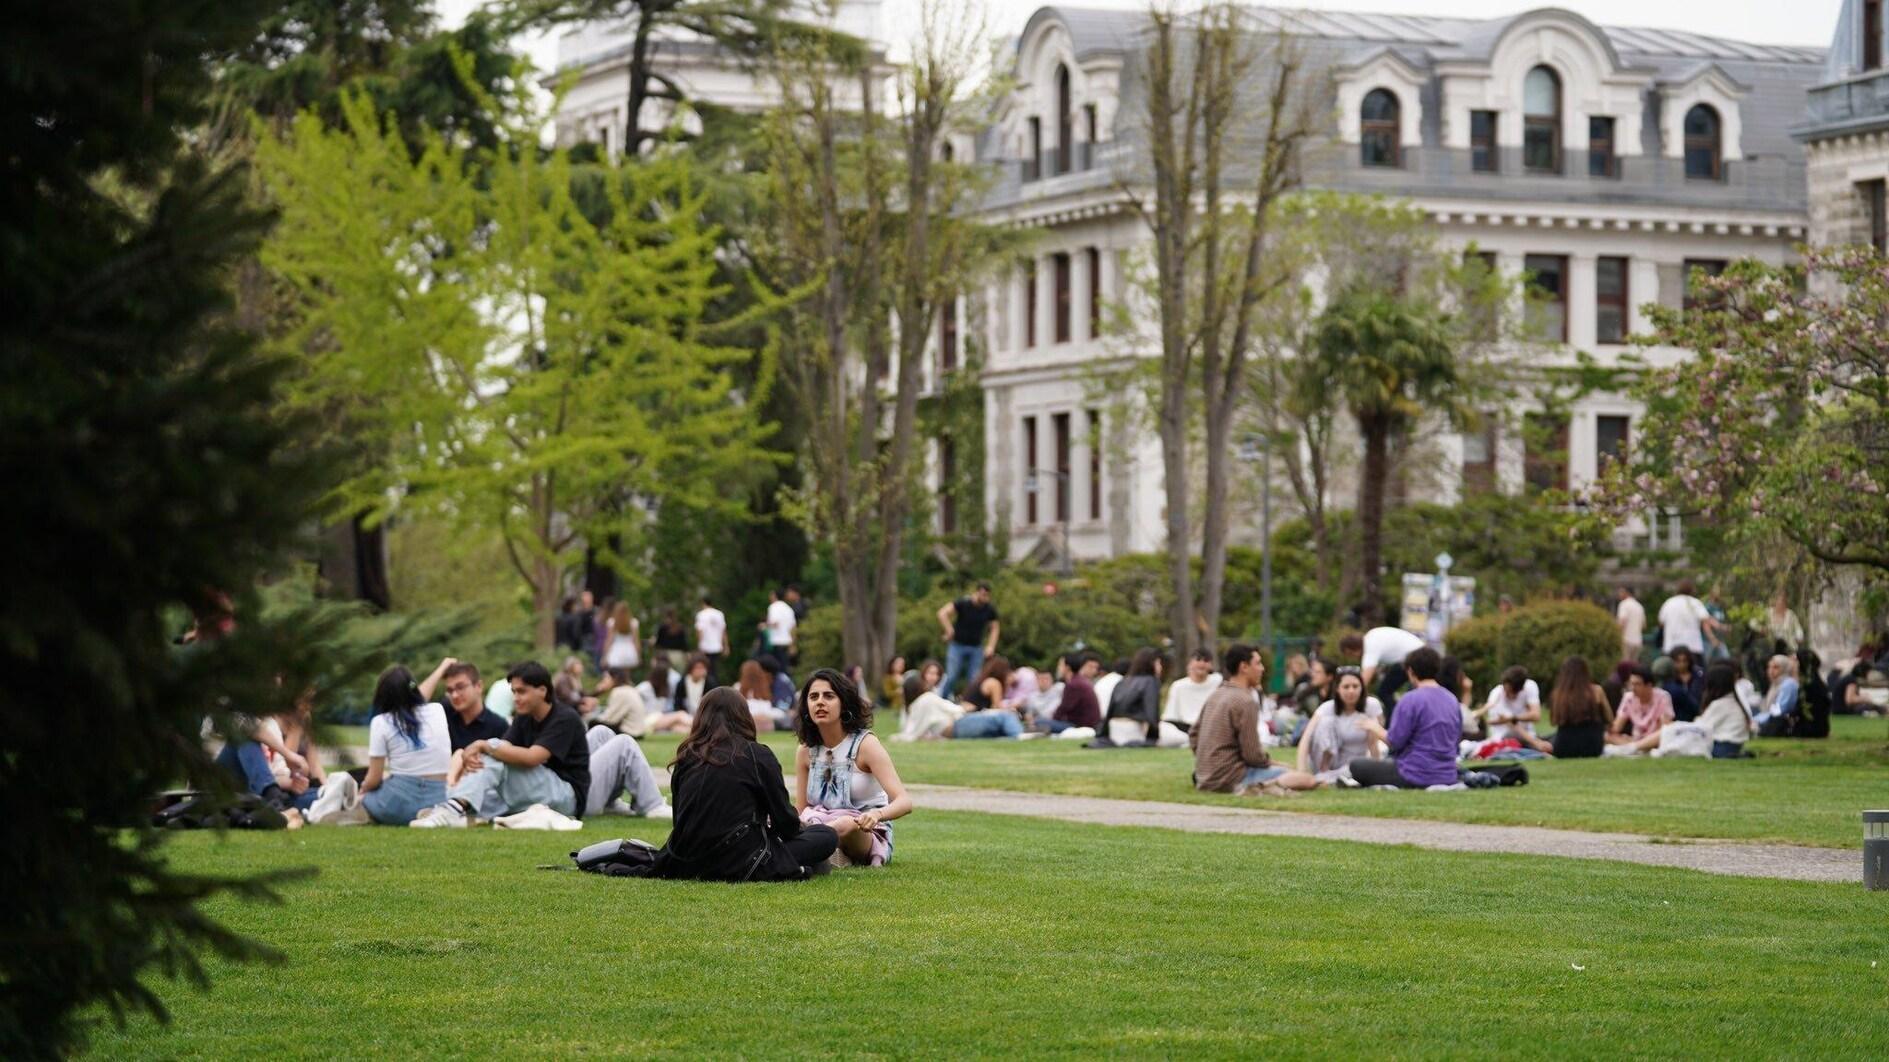 Türk gençlerinin yüzde 50’sinden fazlası mutluluk ifade ediyor: veriler